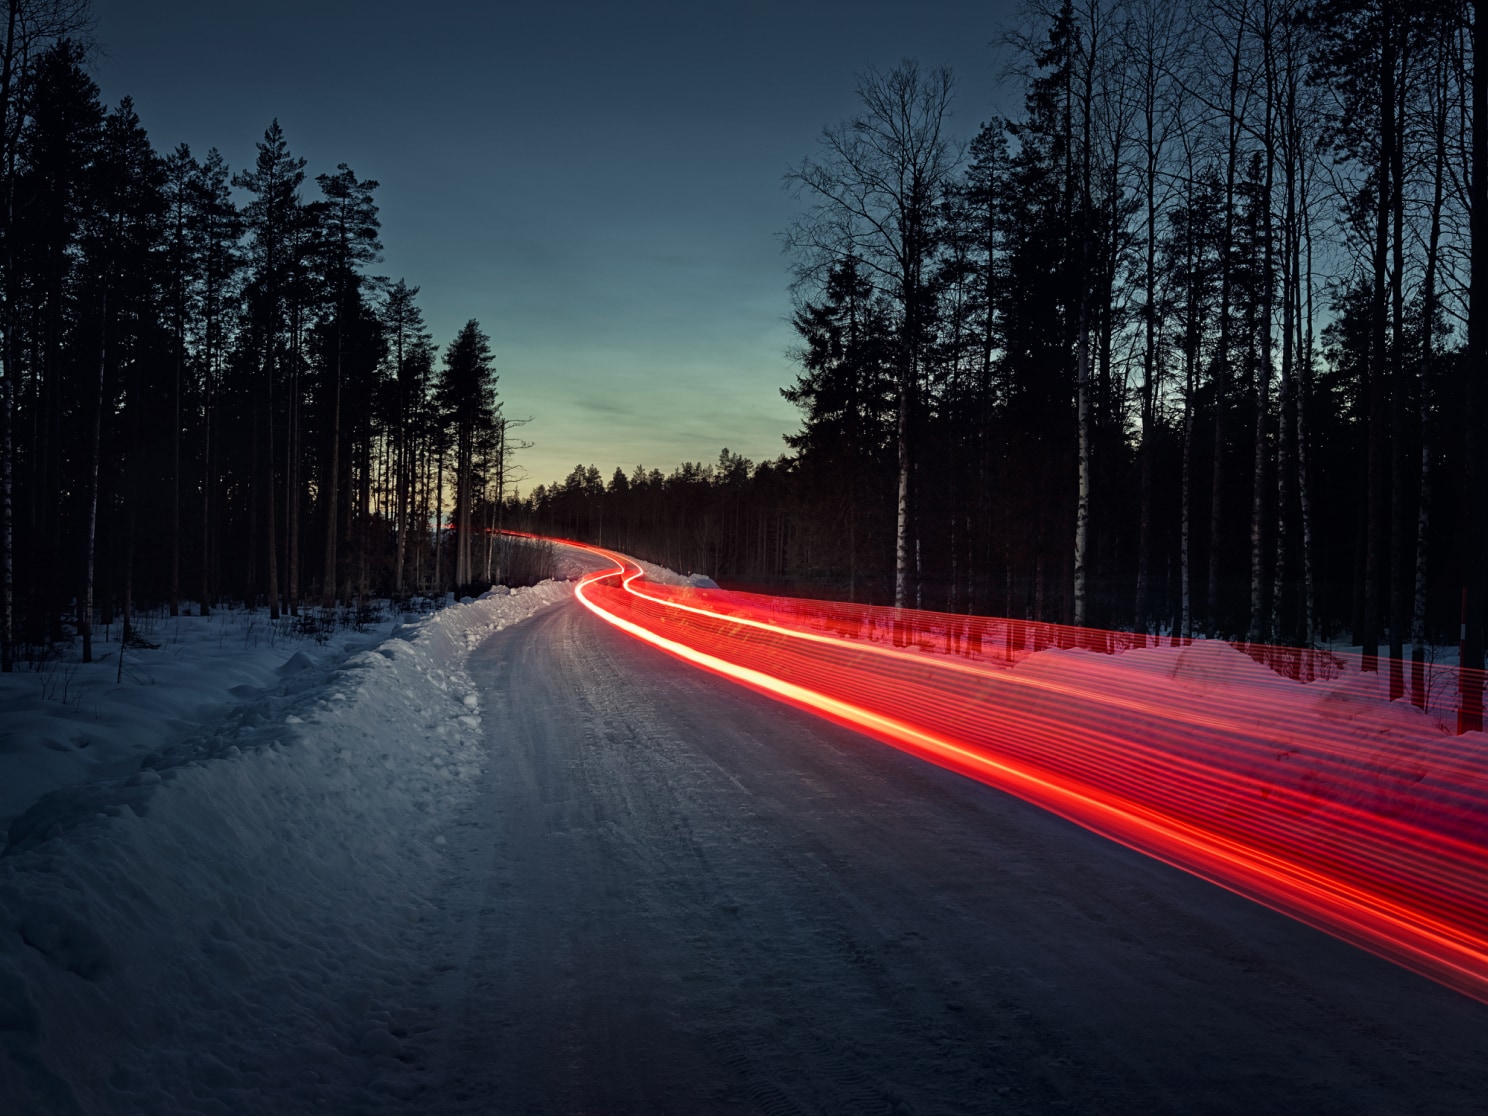 Buzlu bir yolda kırmızı arka lambaları andıran zaman gecikmeli bir çekim.